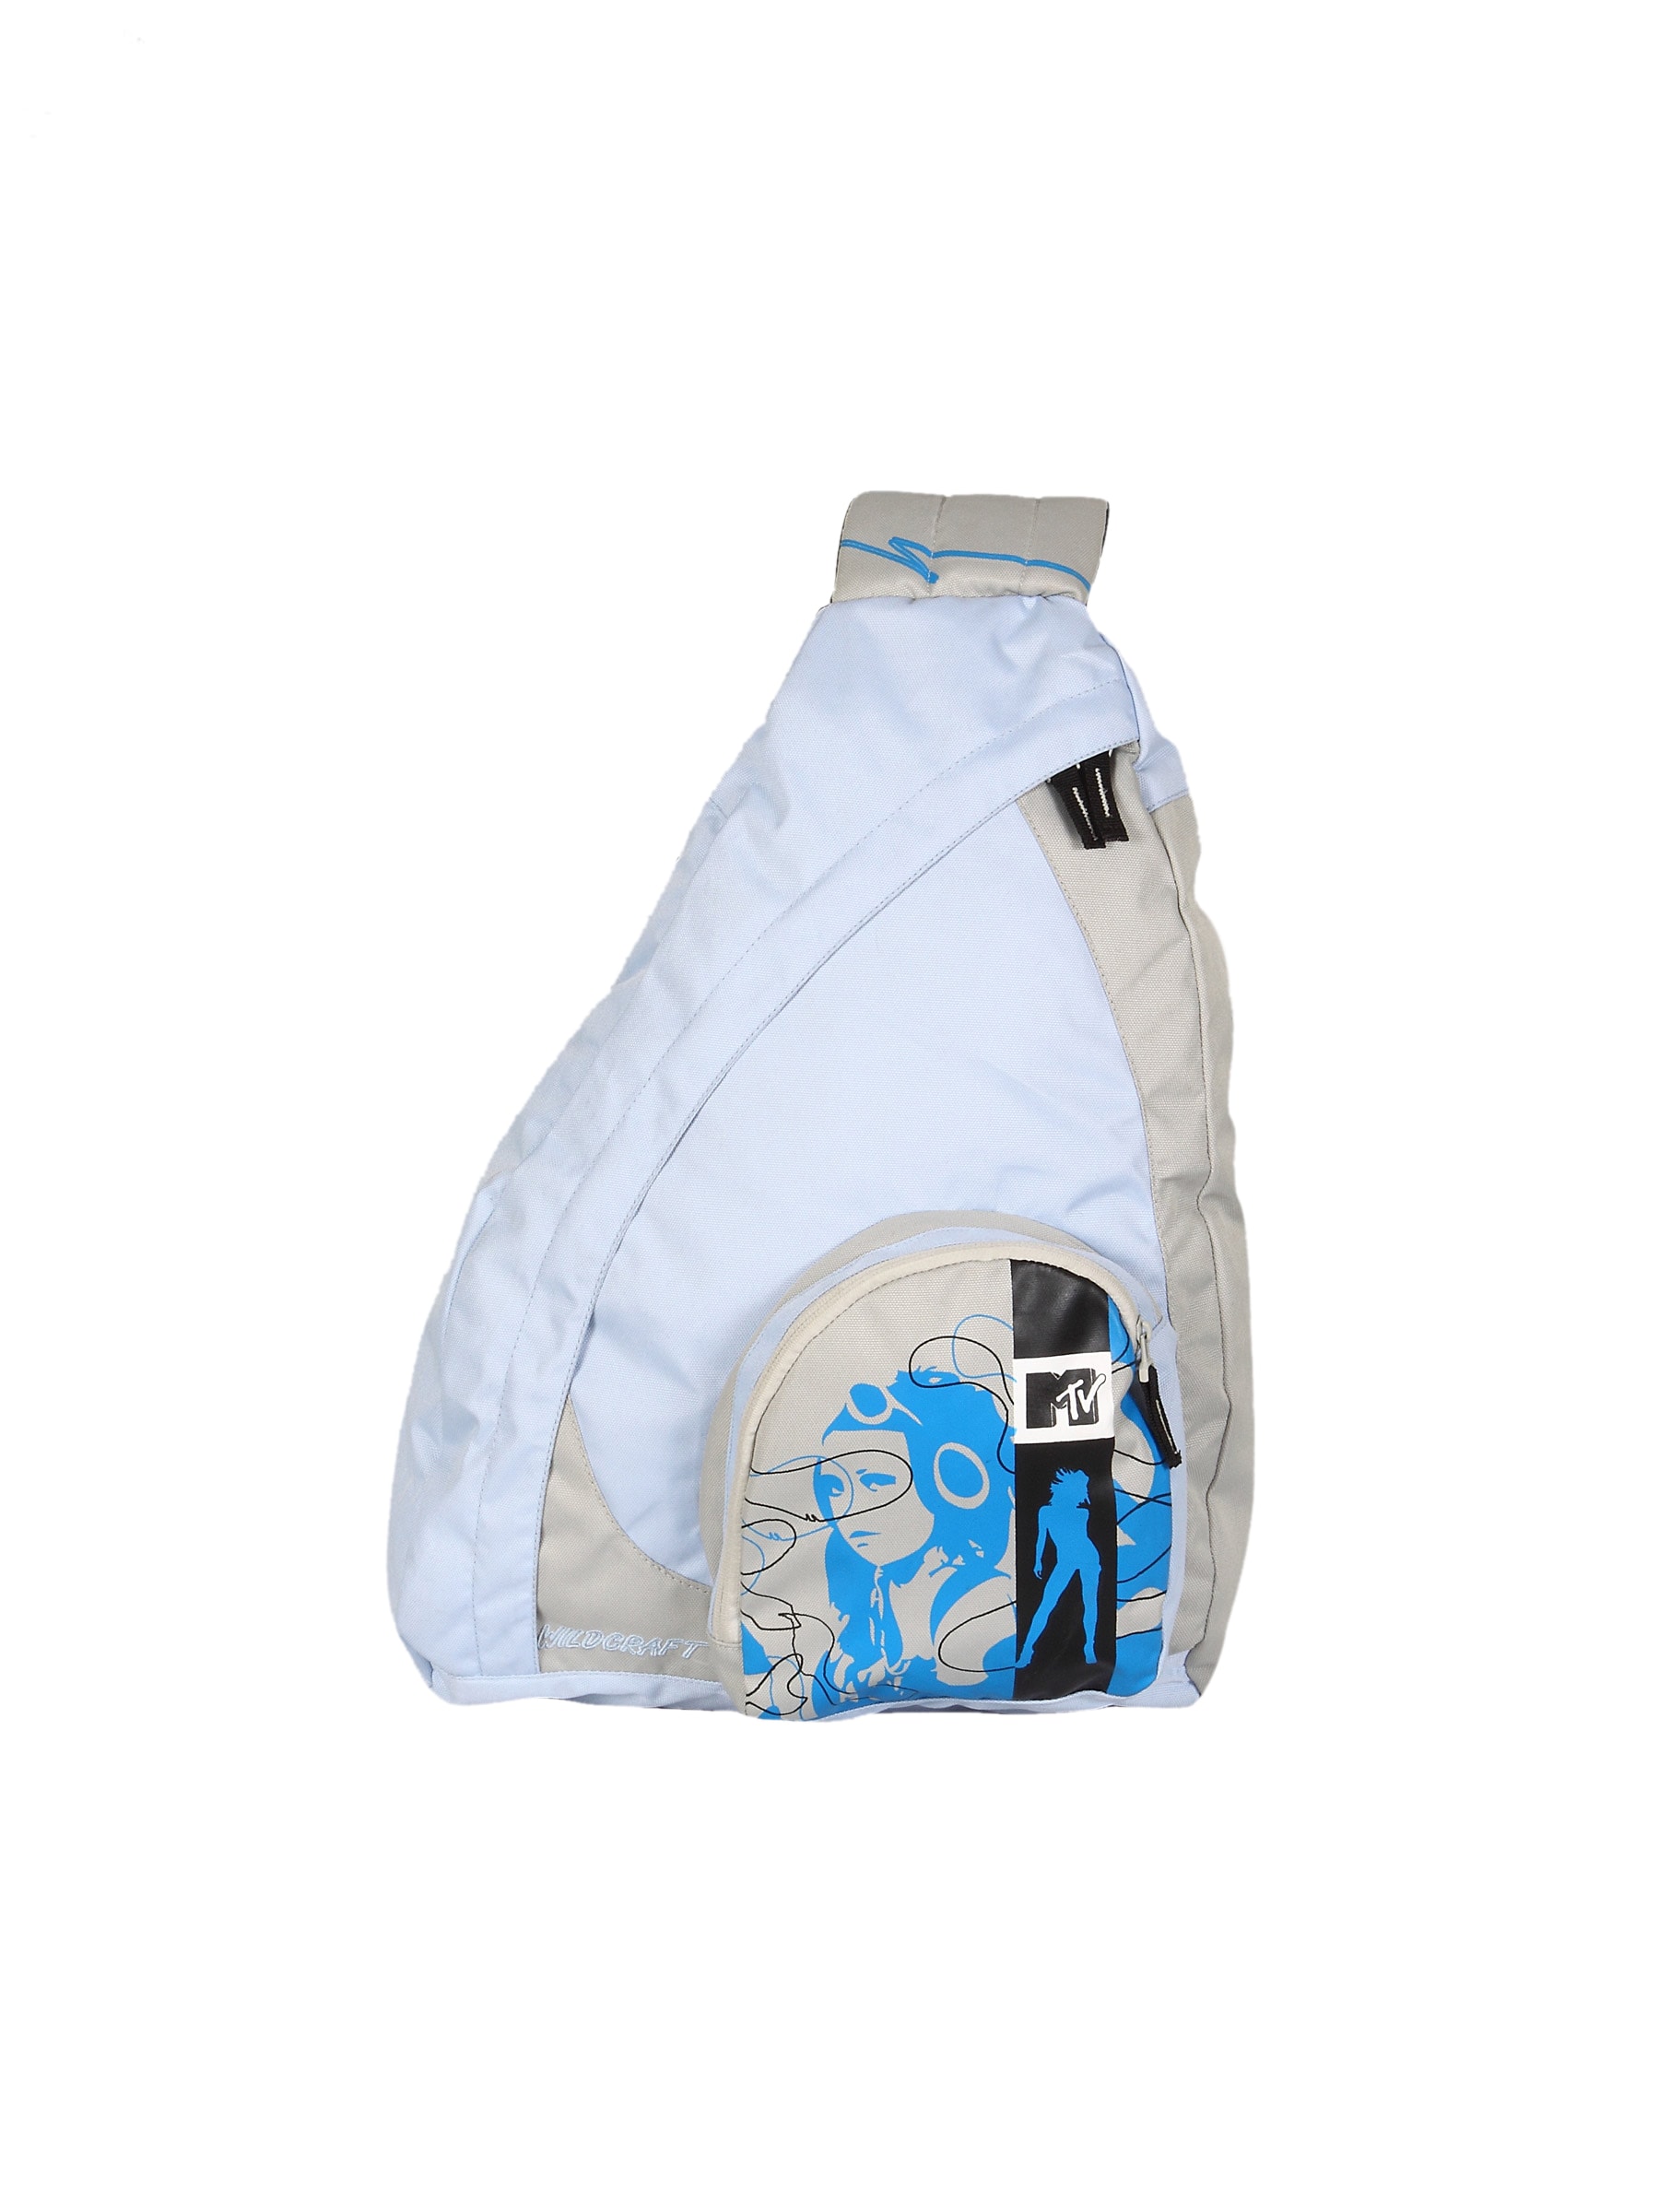 Wildcraft Unisex Blue Printed One-Shoulder Backpack